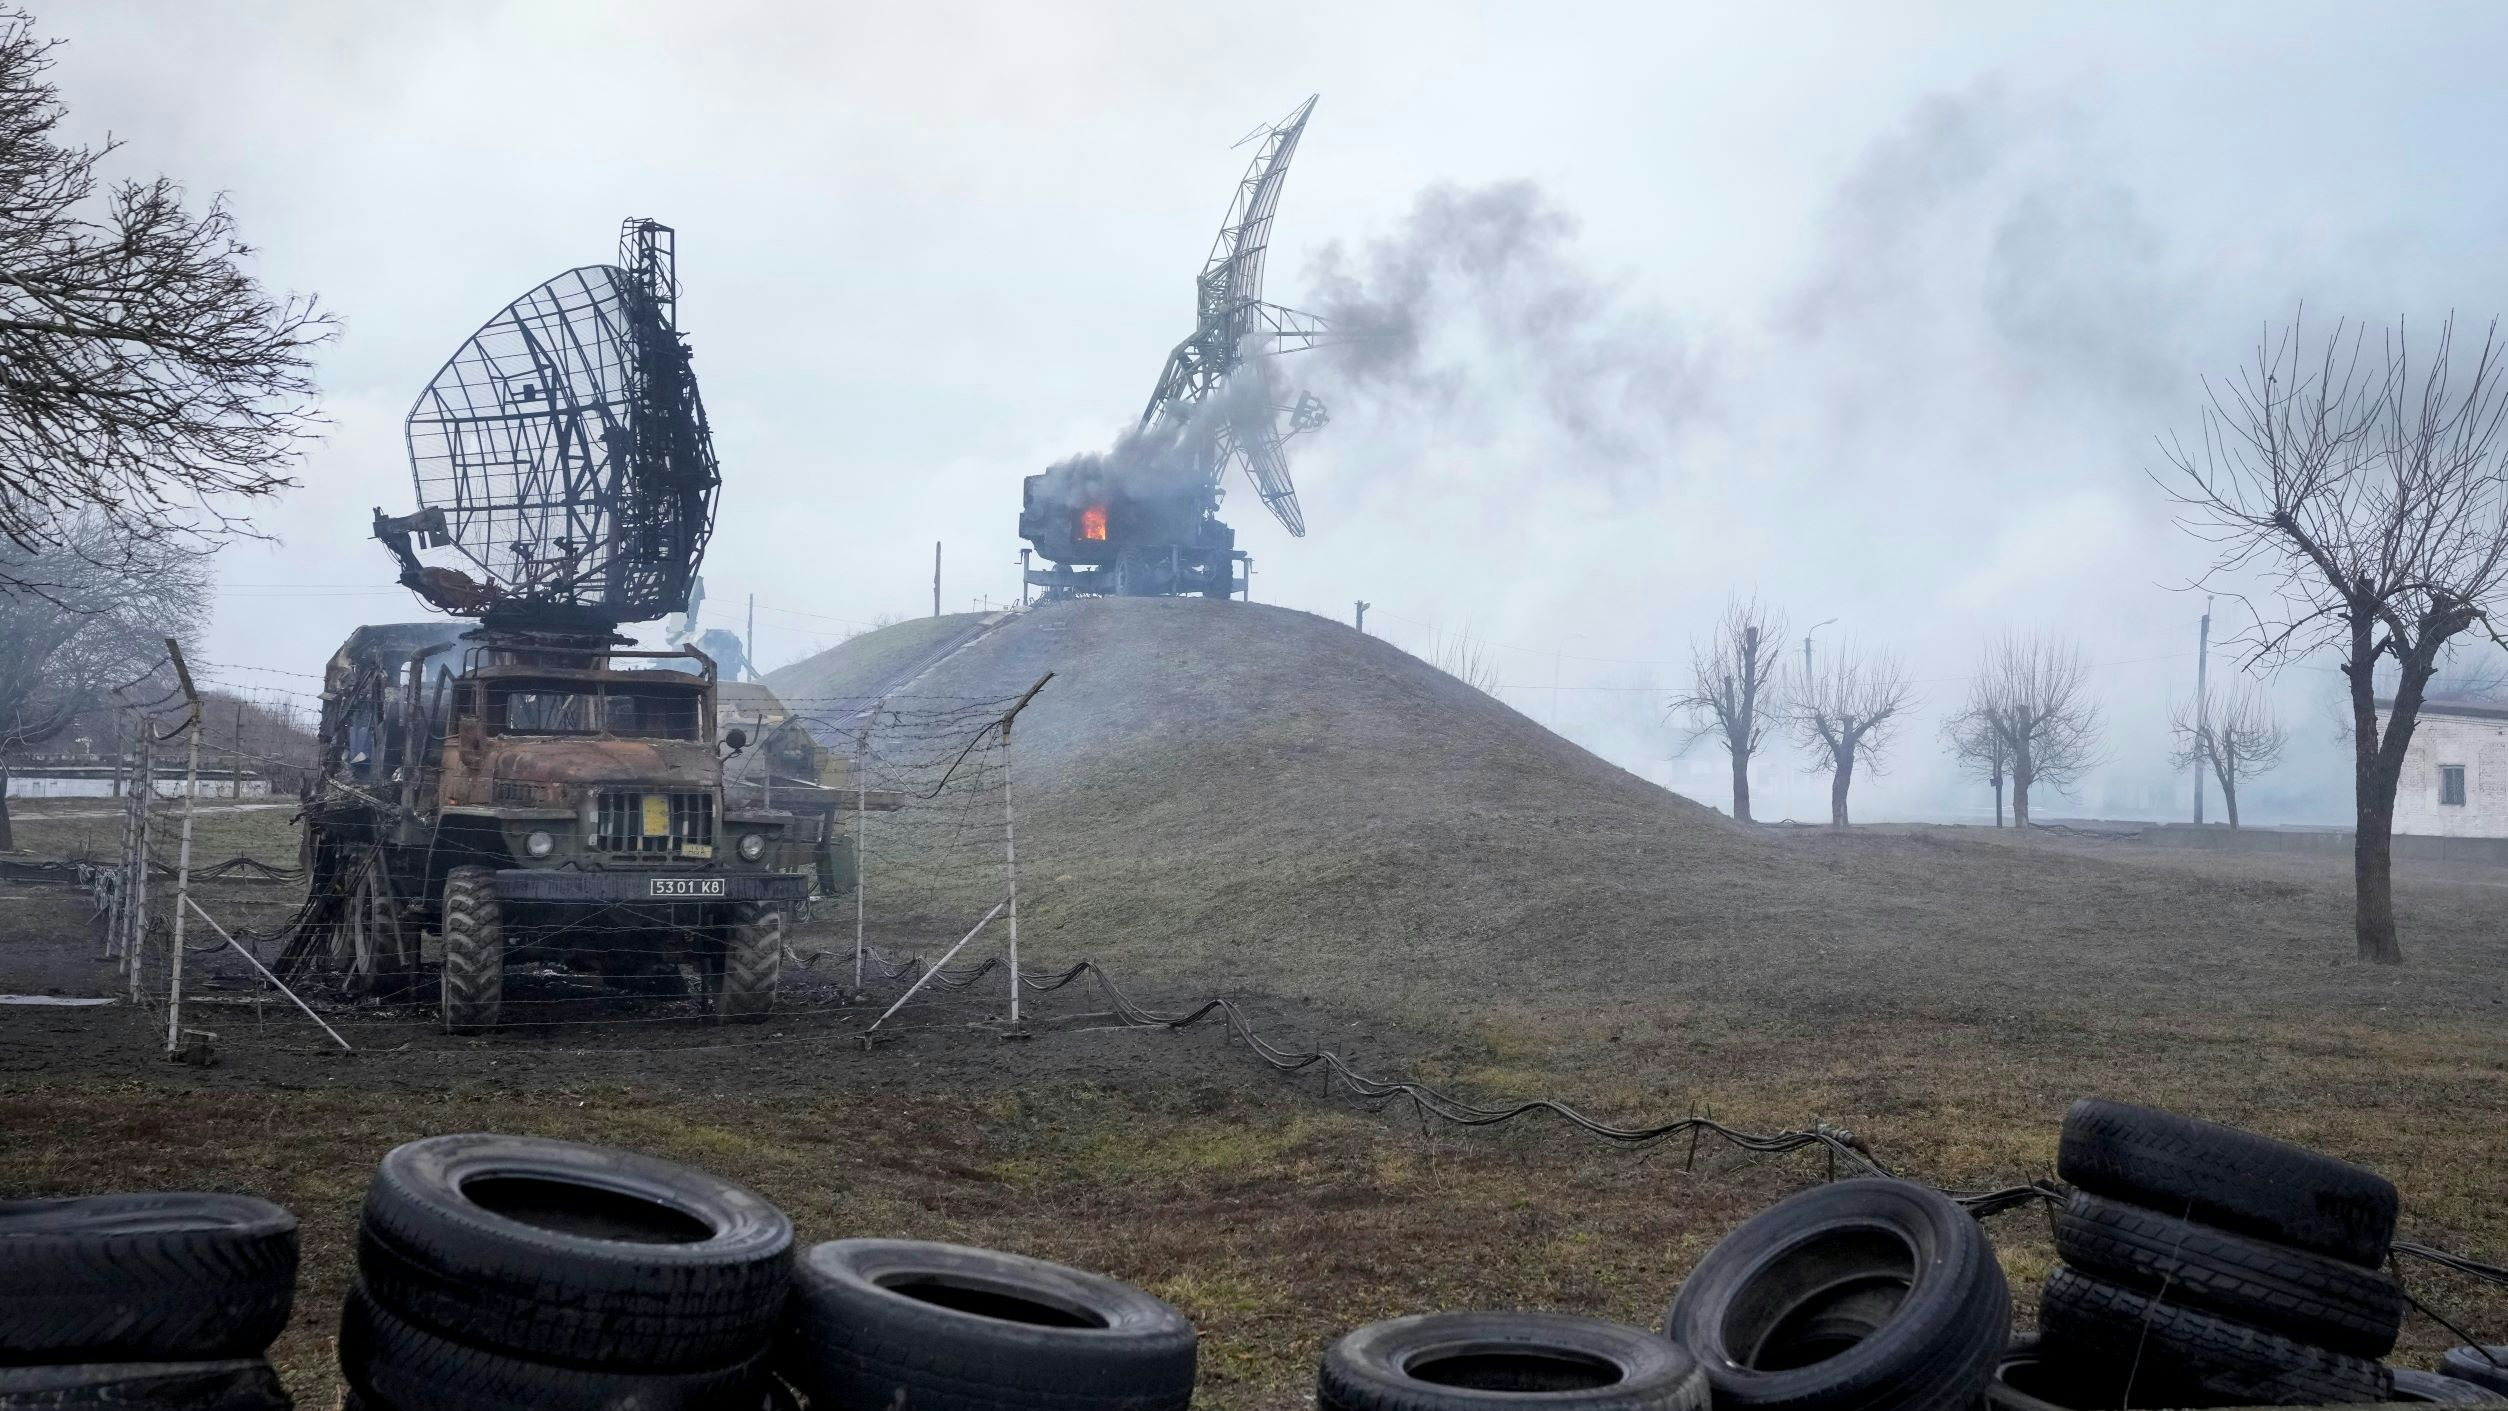 Beschädigte Radaranlagen und andere Ausrüstung sind in einer ukrainischen Militäreinrichtung außerhalb der Stadt zu sehen. Foto: dpa